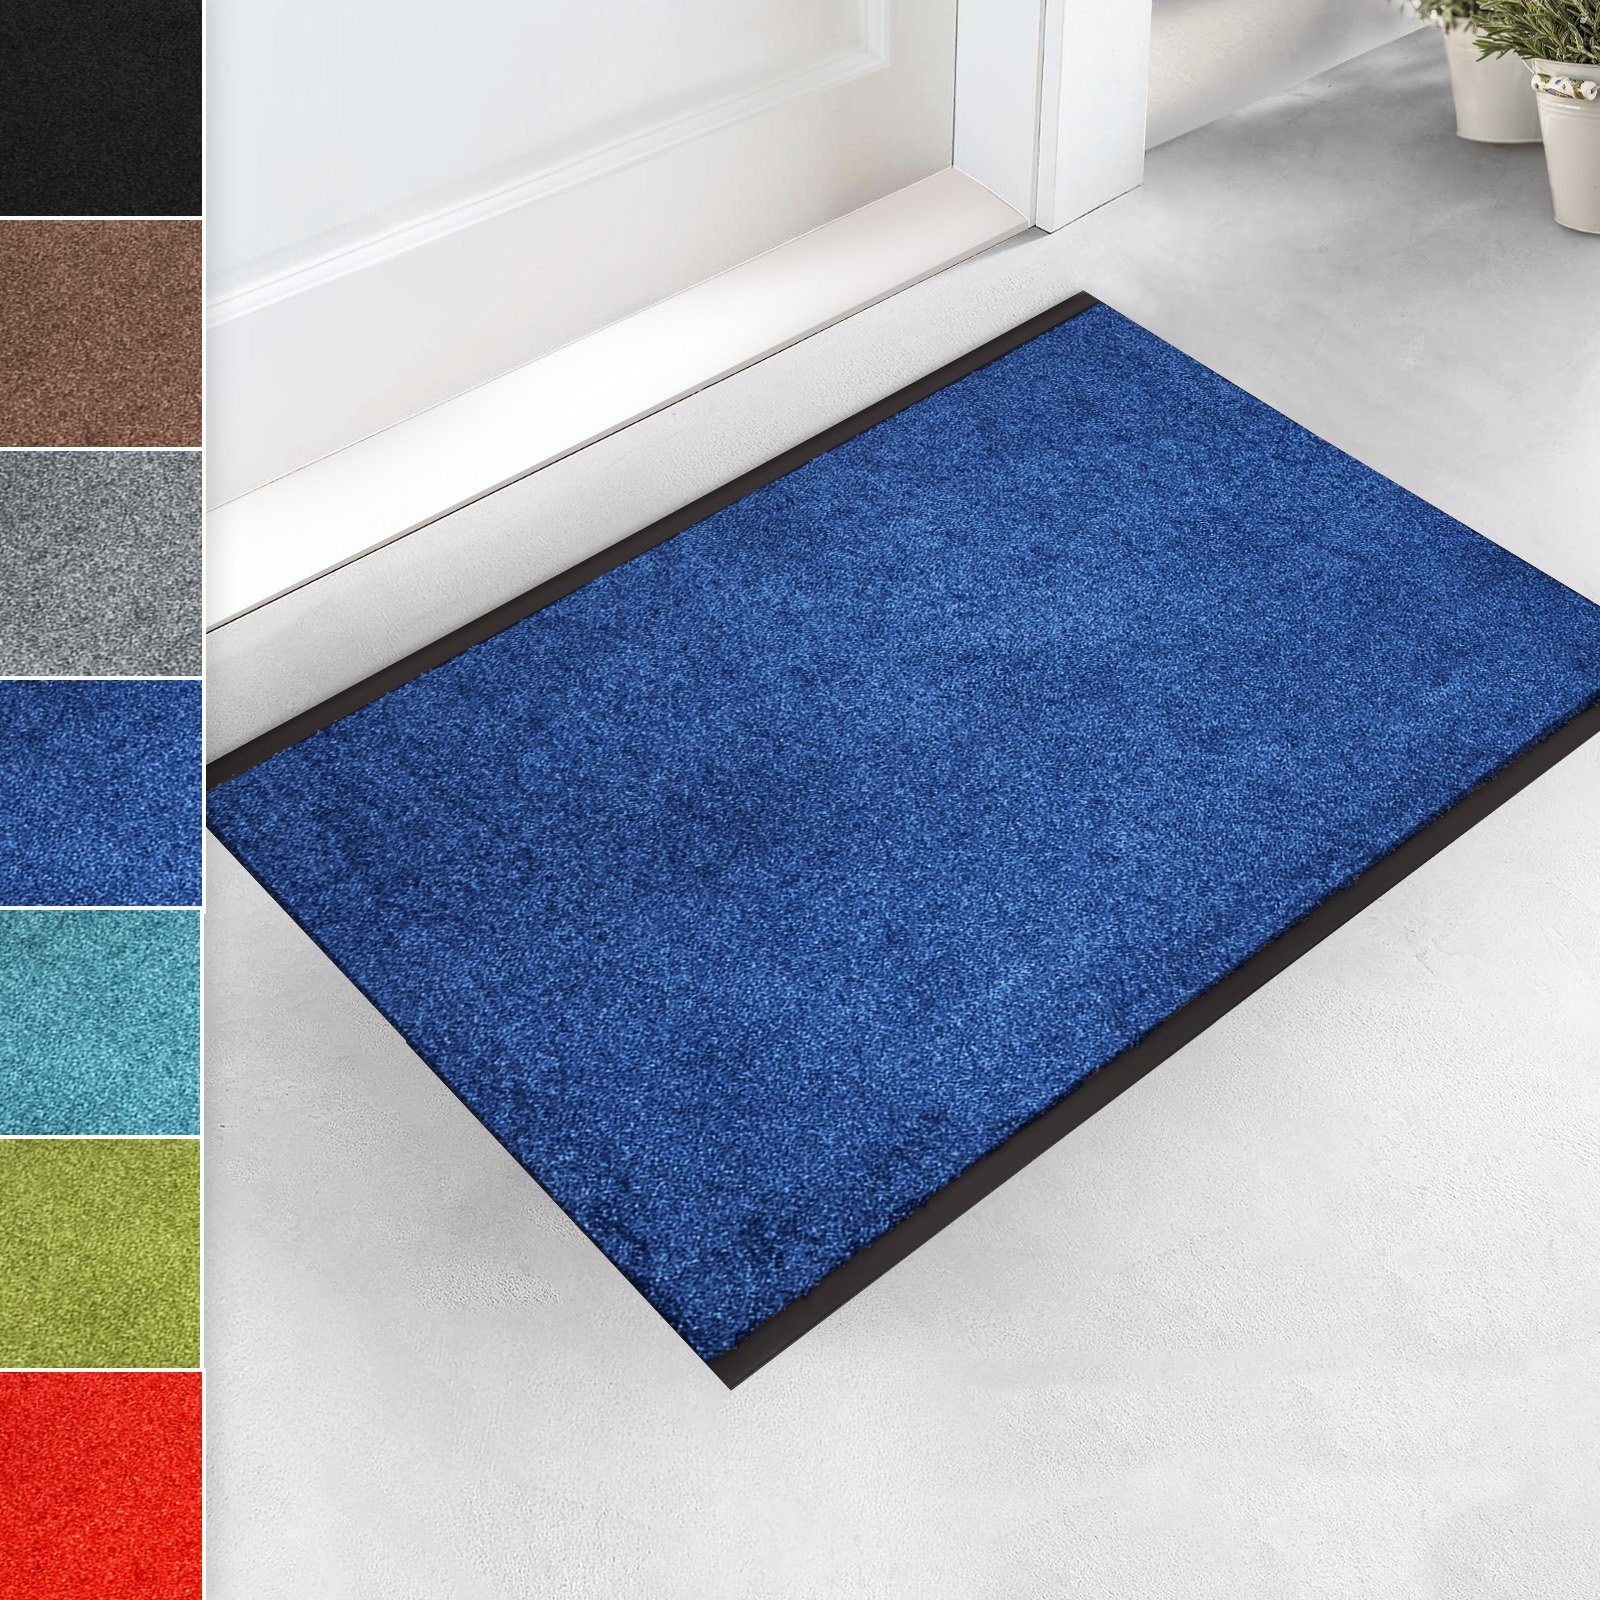 Fußmatte Schmutzfangmatte Monochrom Zuschnitt, Viele Farben & Größen, Floordirekt, Höhe: 7 mm Blau